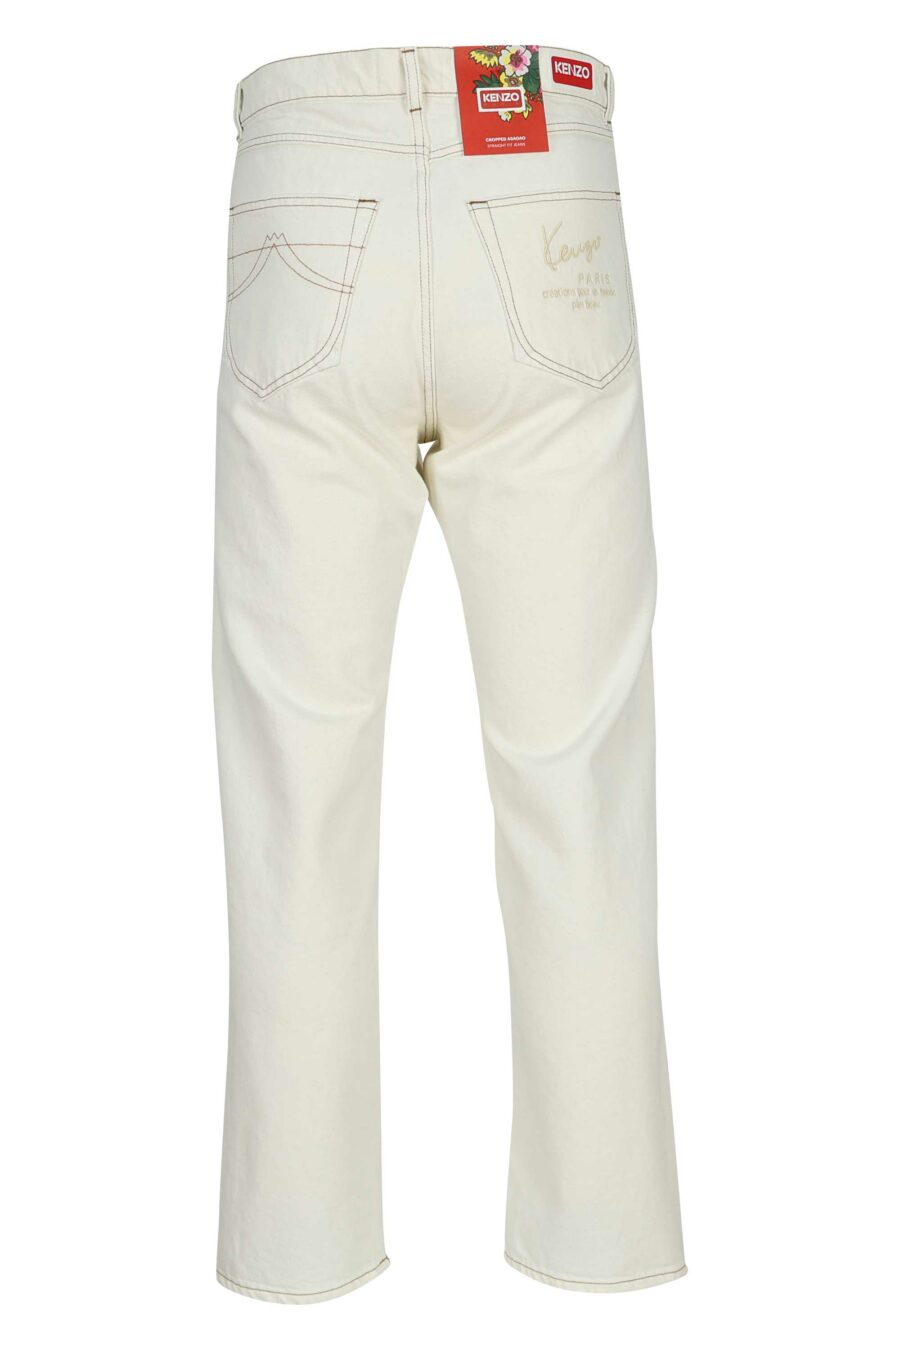 Pantalón vaquero blanco con logo "k" - 3612230591813 2